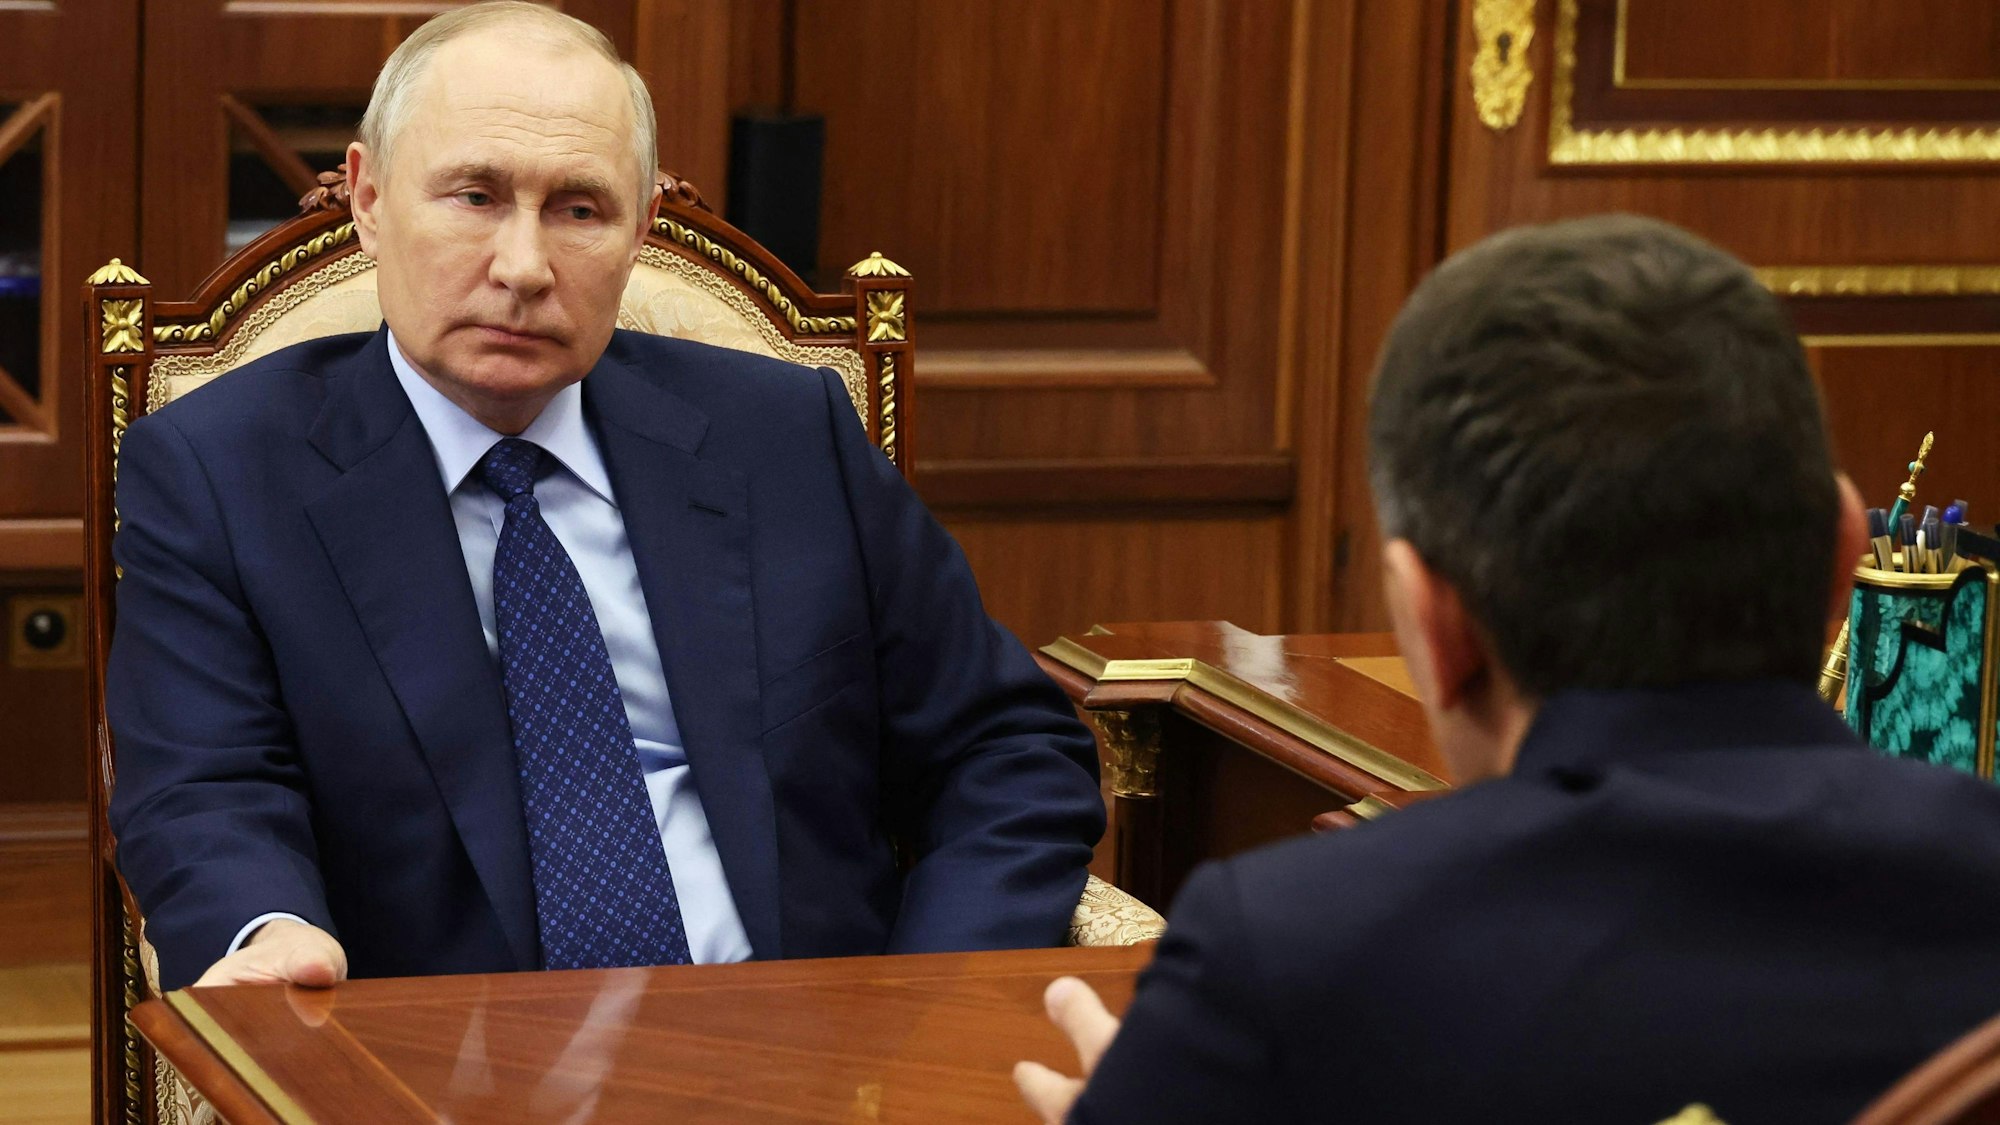 Dieses von der russischen staatlichen Sputnik verbreitete Foto zeigt den russischen Präsidenten Wladimir Putin bei einem Treffen mit Andrej Rjumin, dem CEO und Vorstandsvorsitzenden von Rosseti, einem russischen Stromversorger.